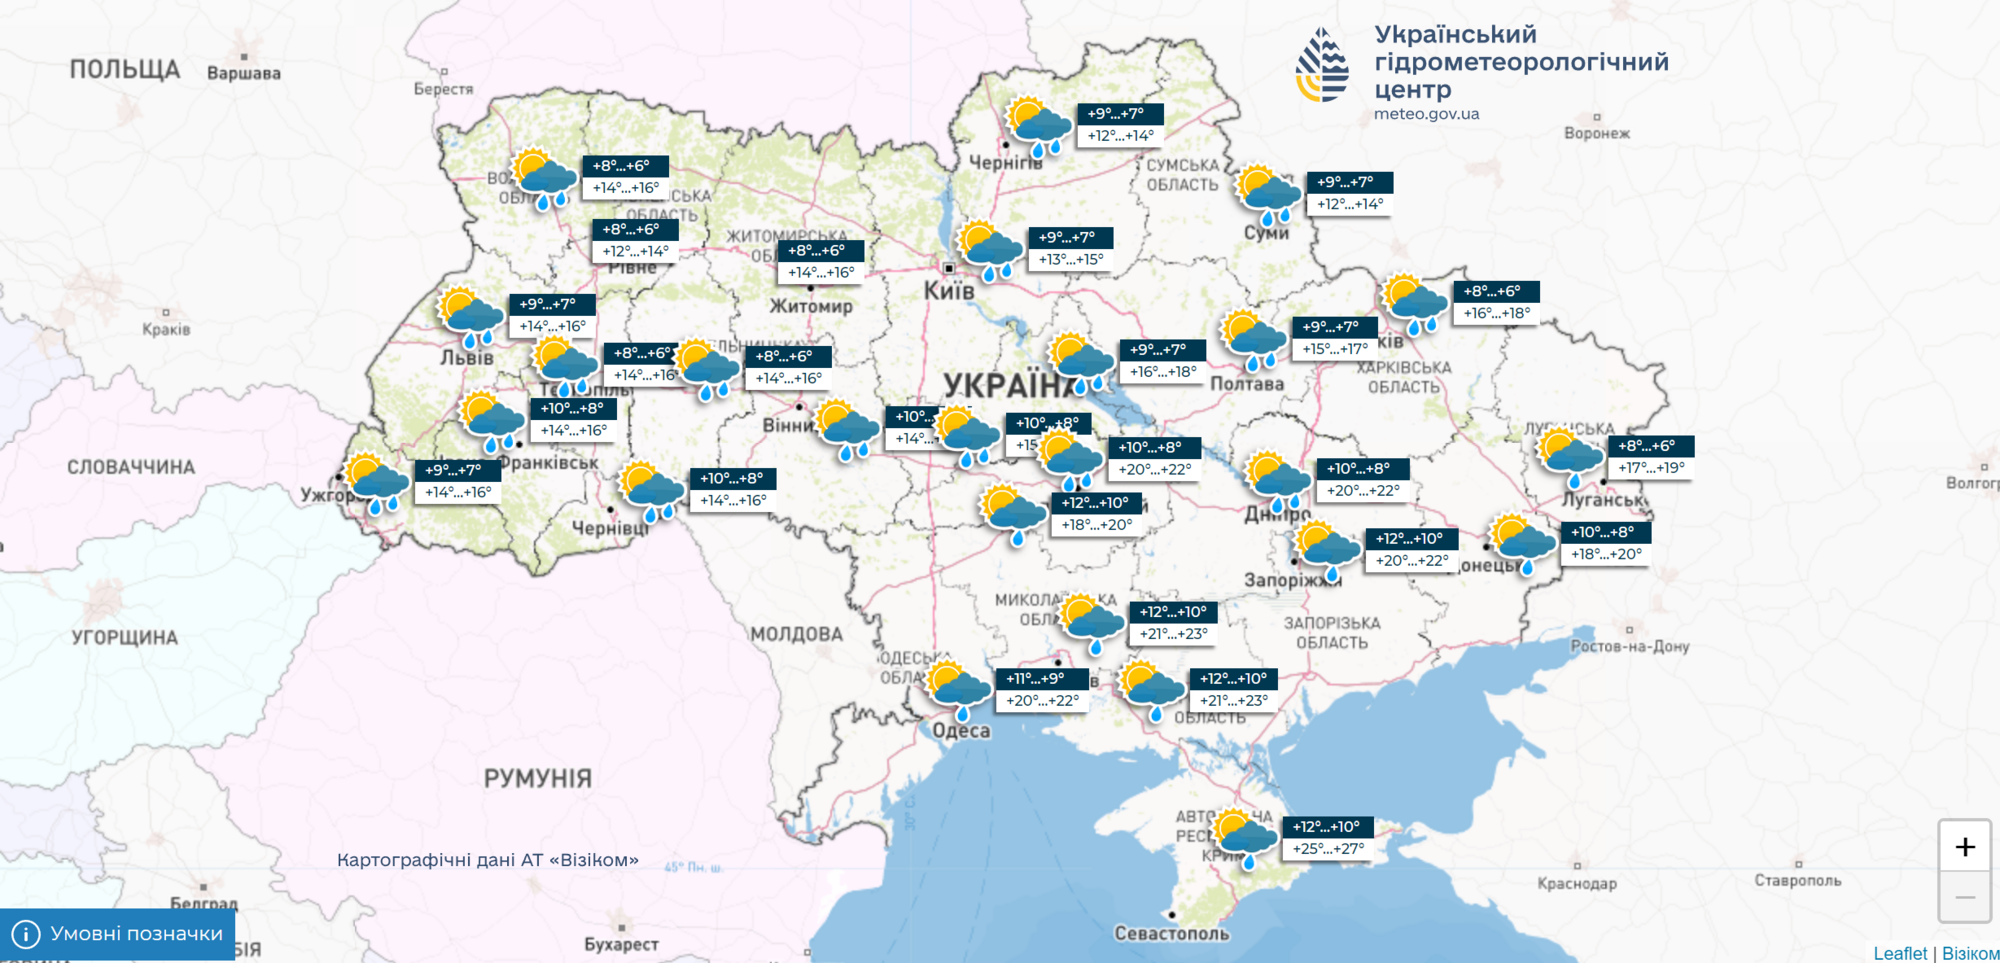 Дощі й сильний вітер: синоптикиня попередила про погіршення погоди в Україні 